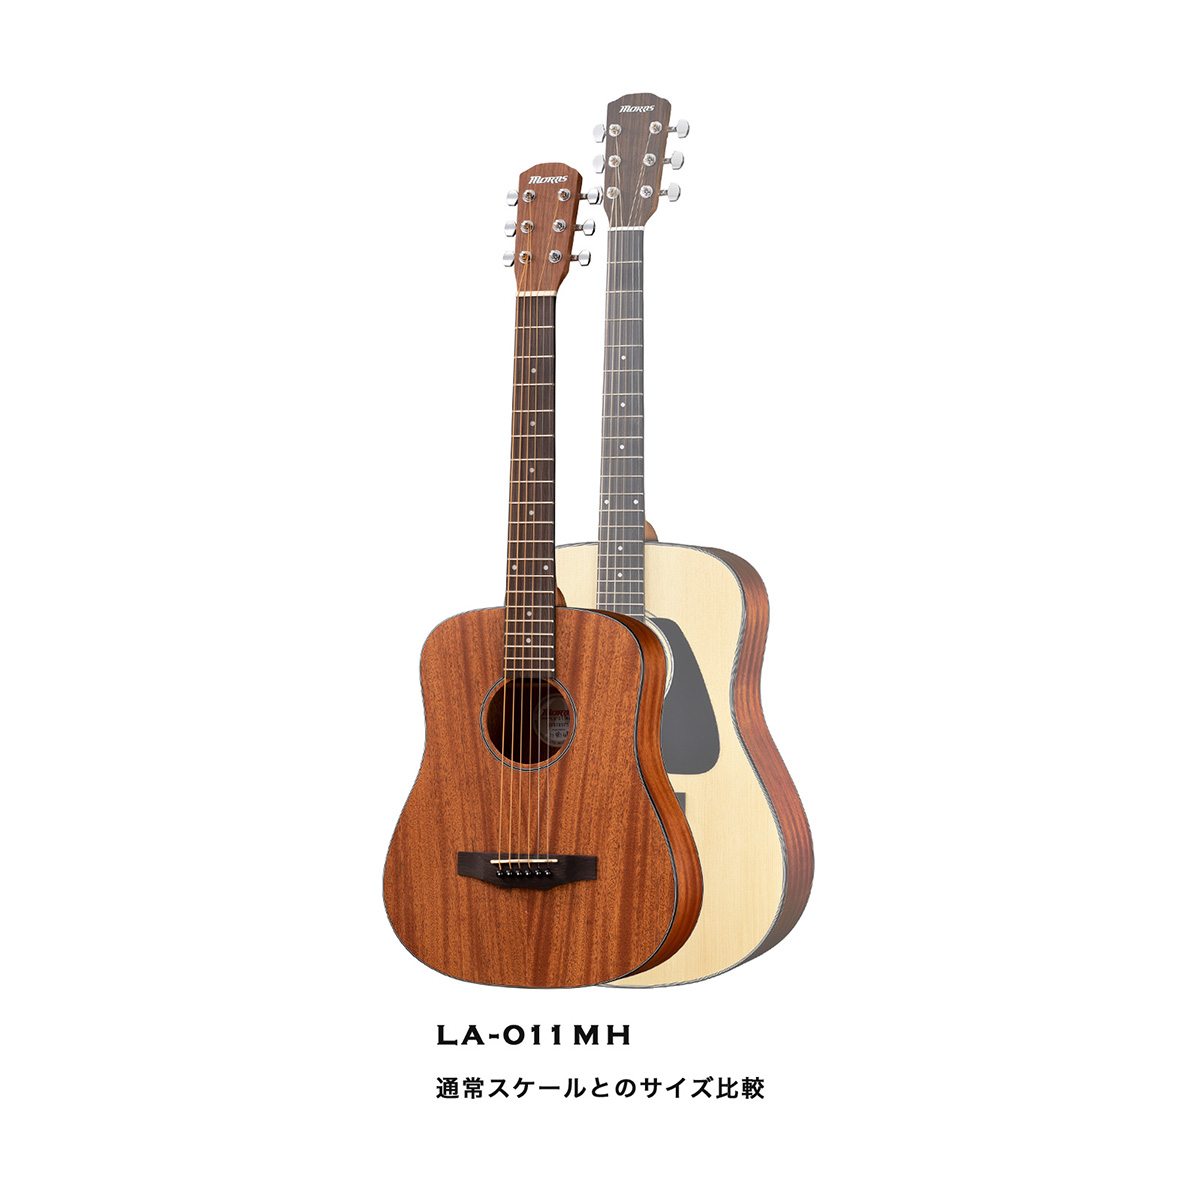 MORRIS LA-011 MH ミニアコースティックギター マホガニートップ 